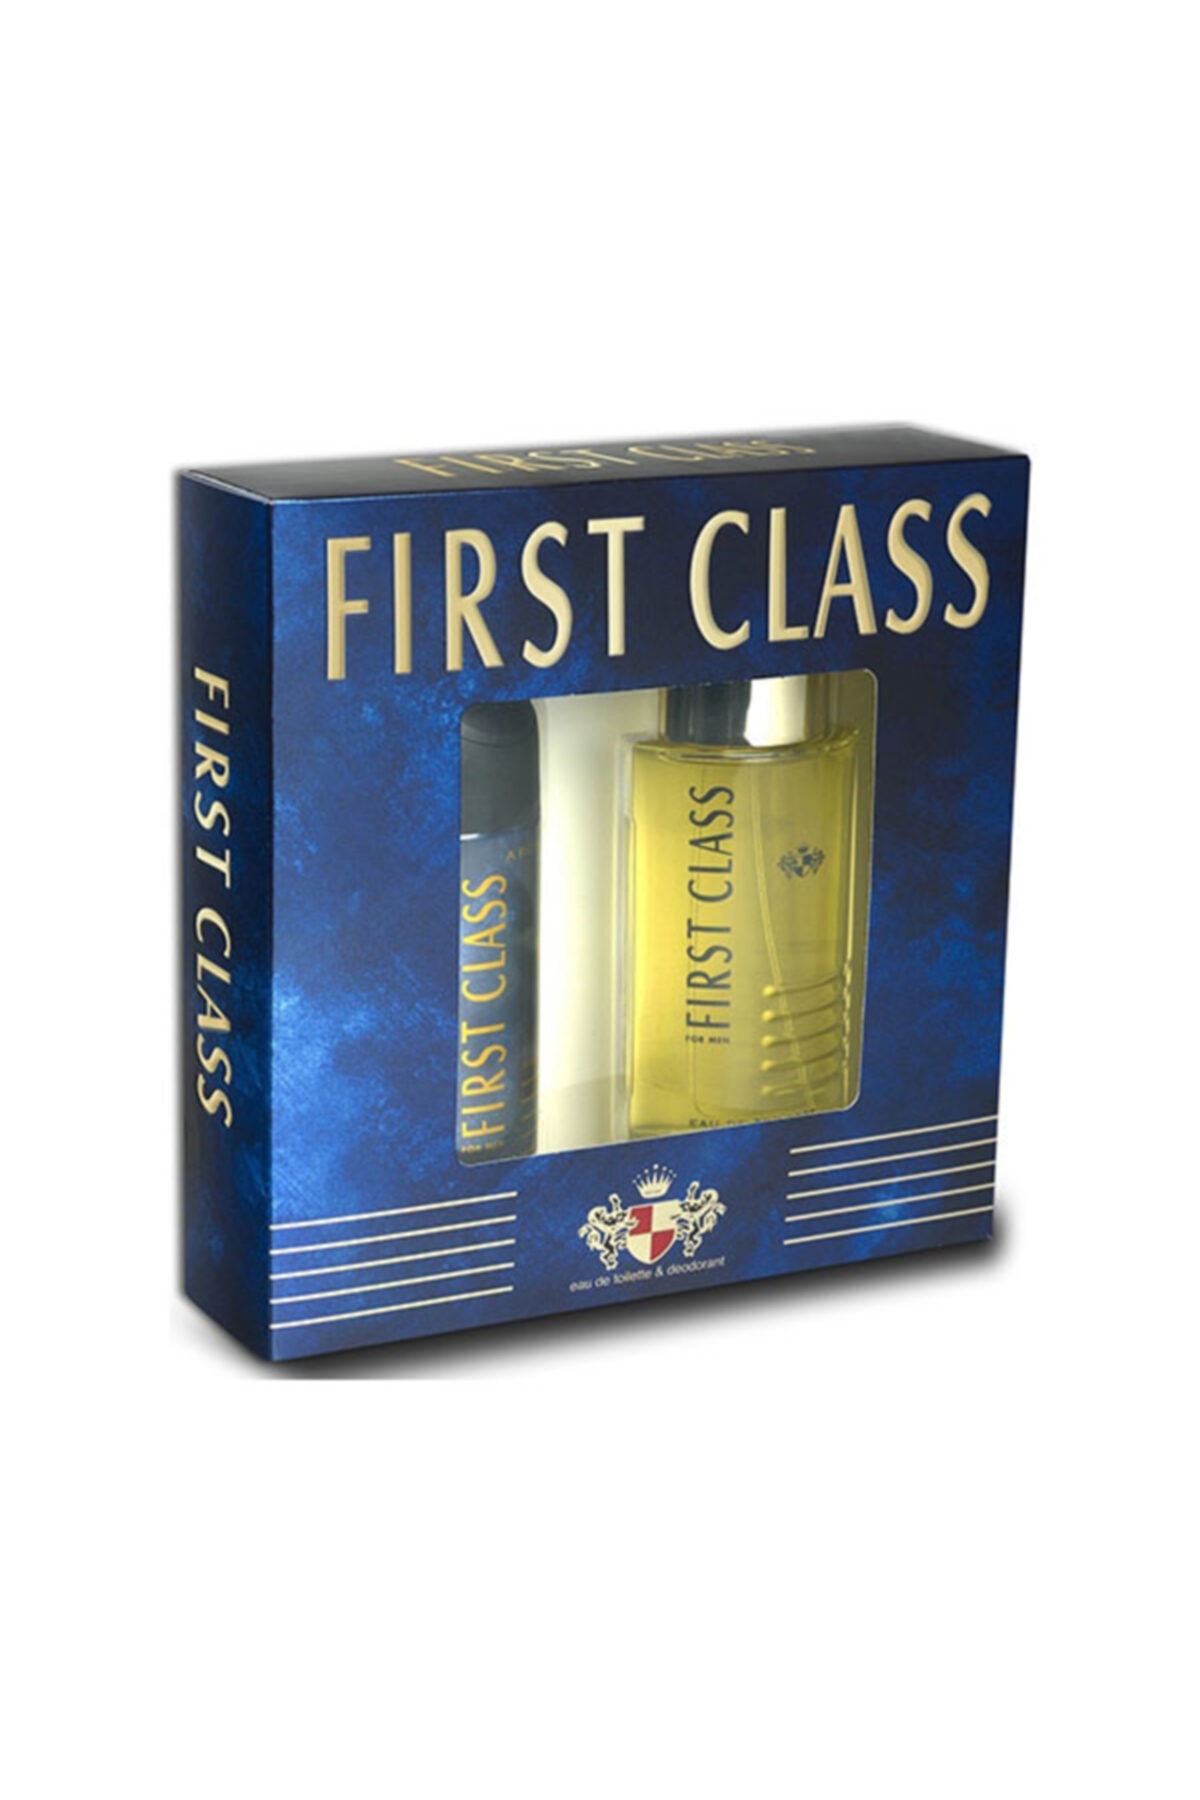 First Class Edt Parfüm 100ml + Deodorant 150ml